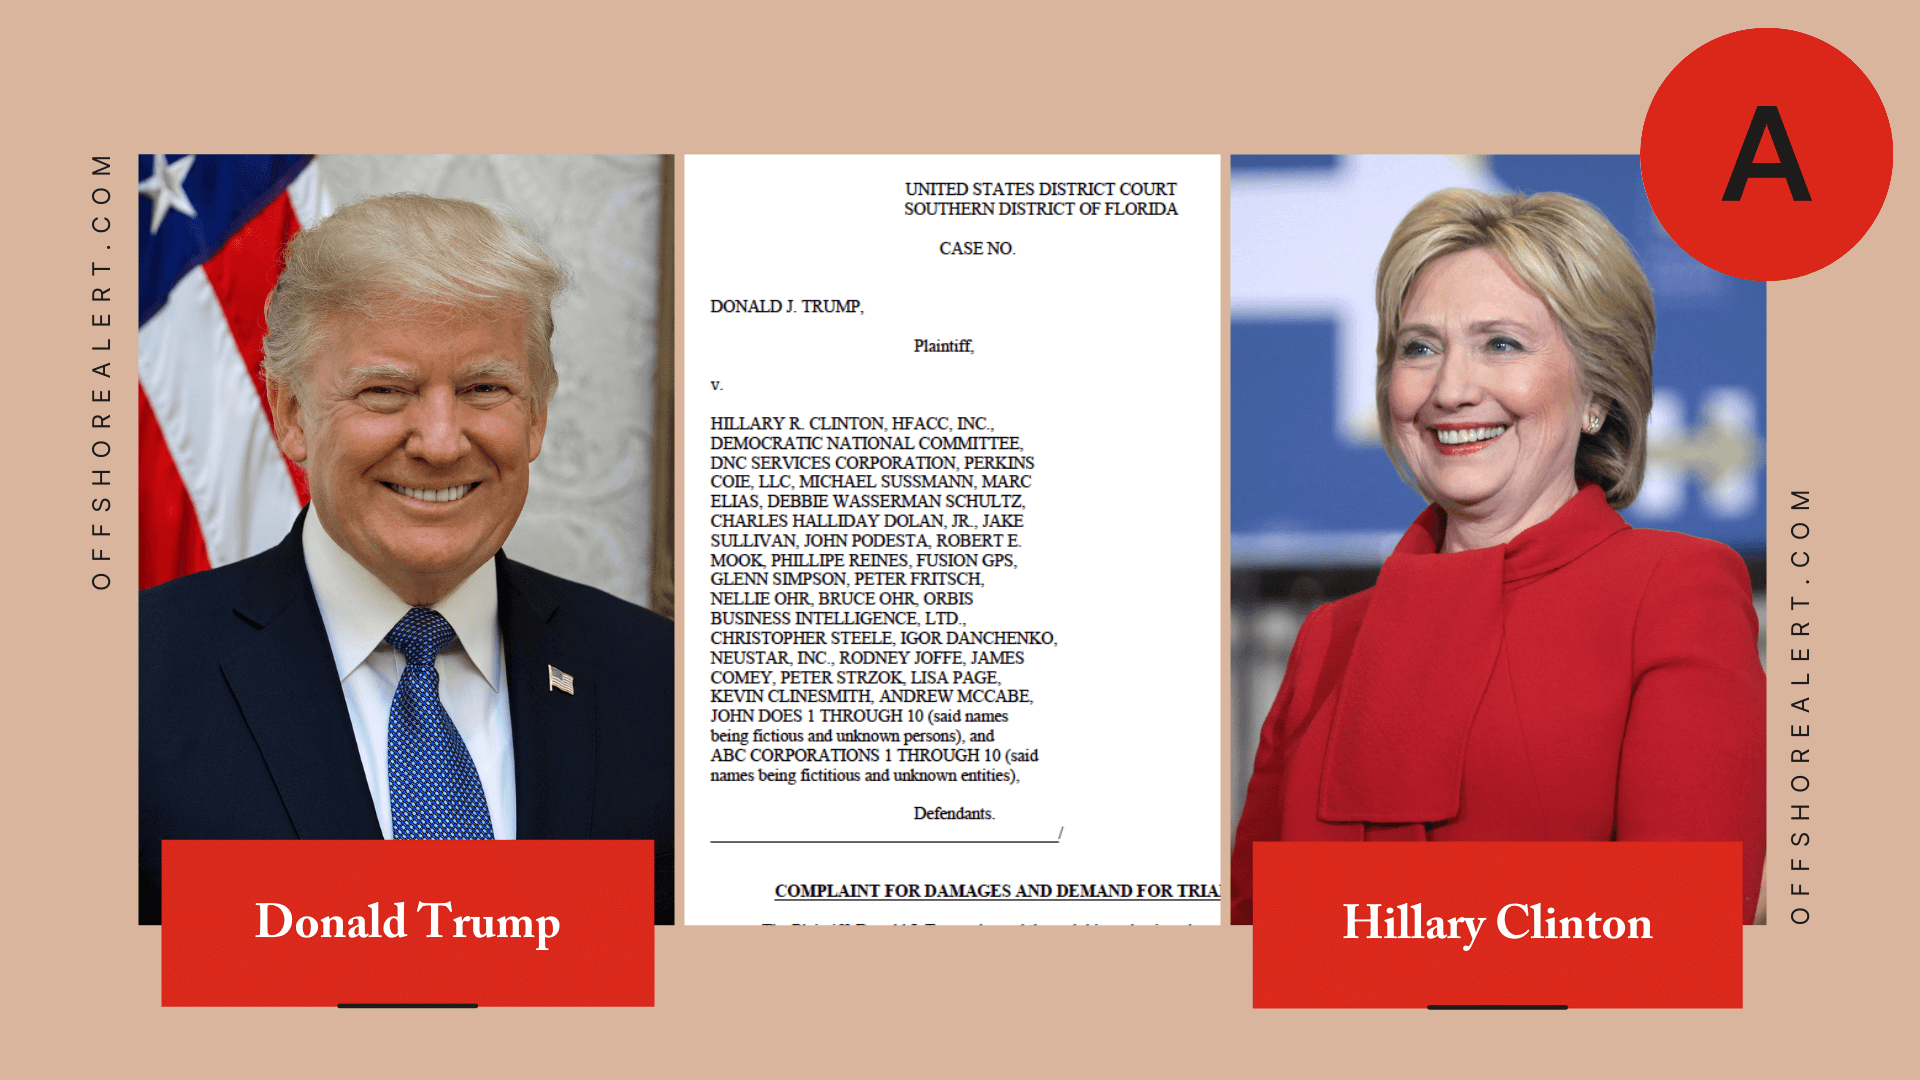 Trump v. Clinton